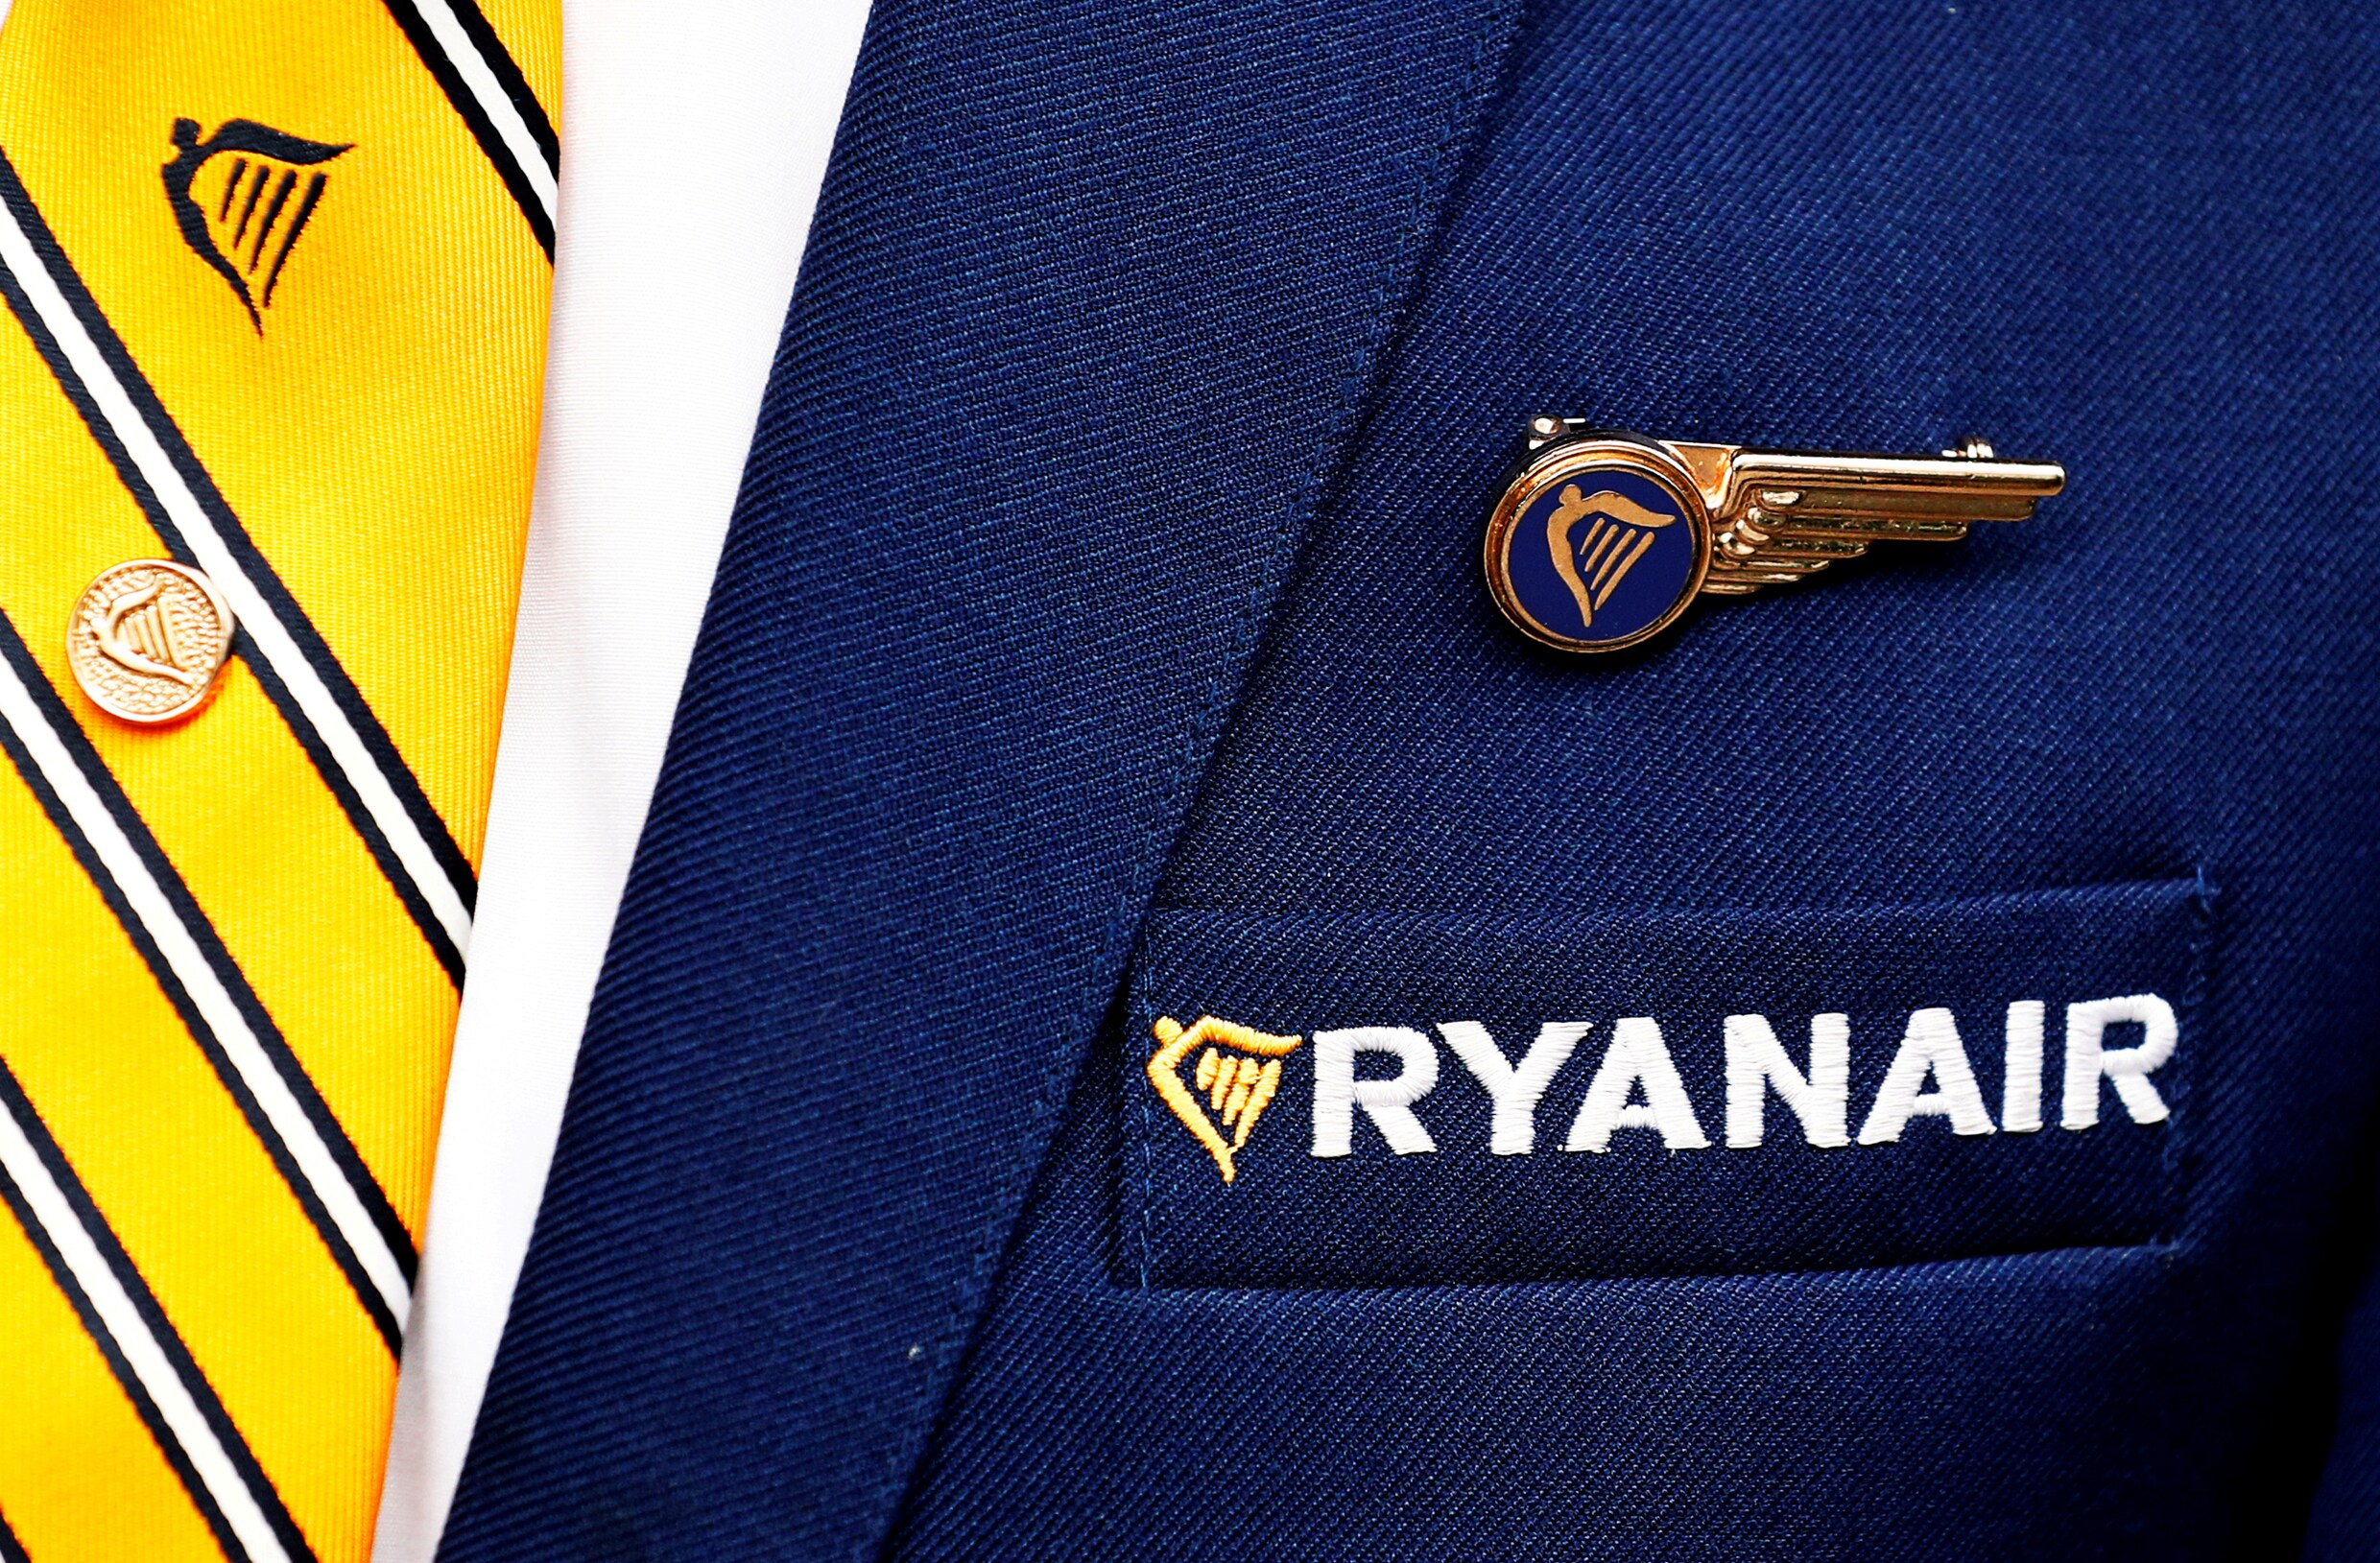 Test-Aankoop vs. Ryanair: een stunt?